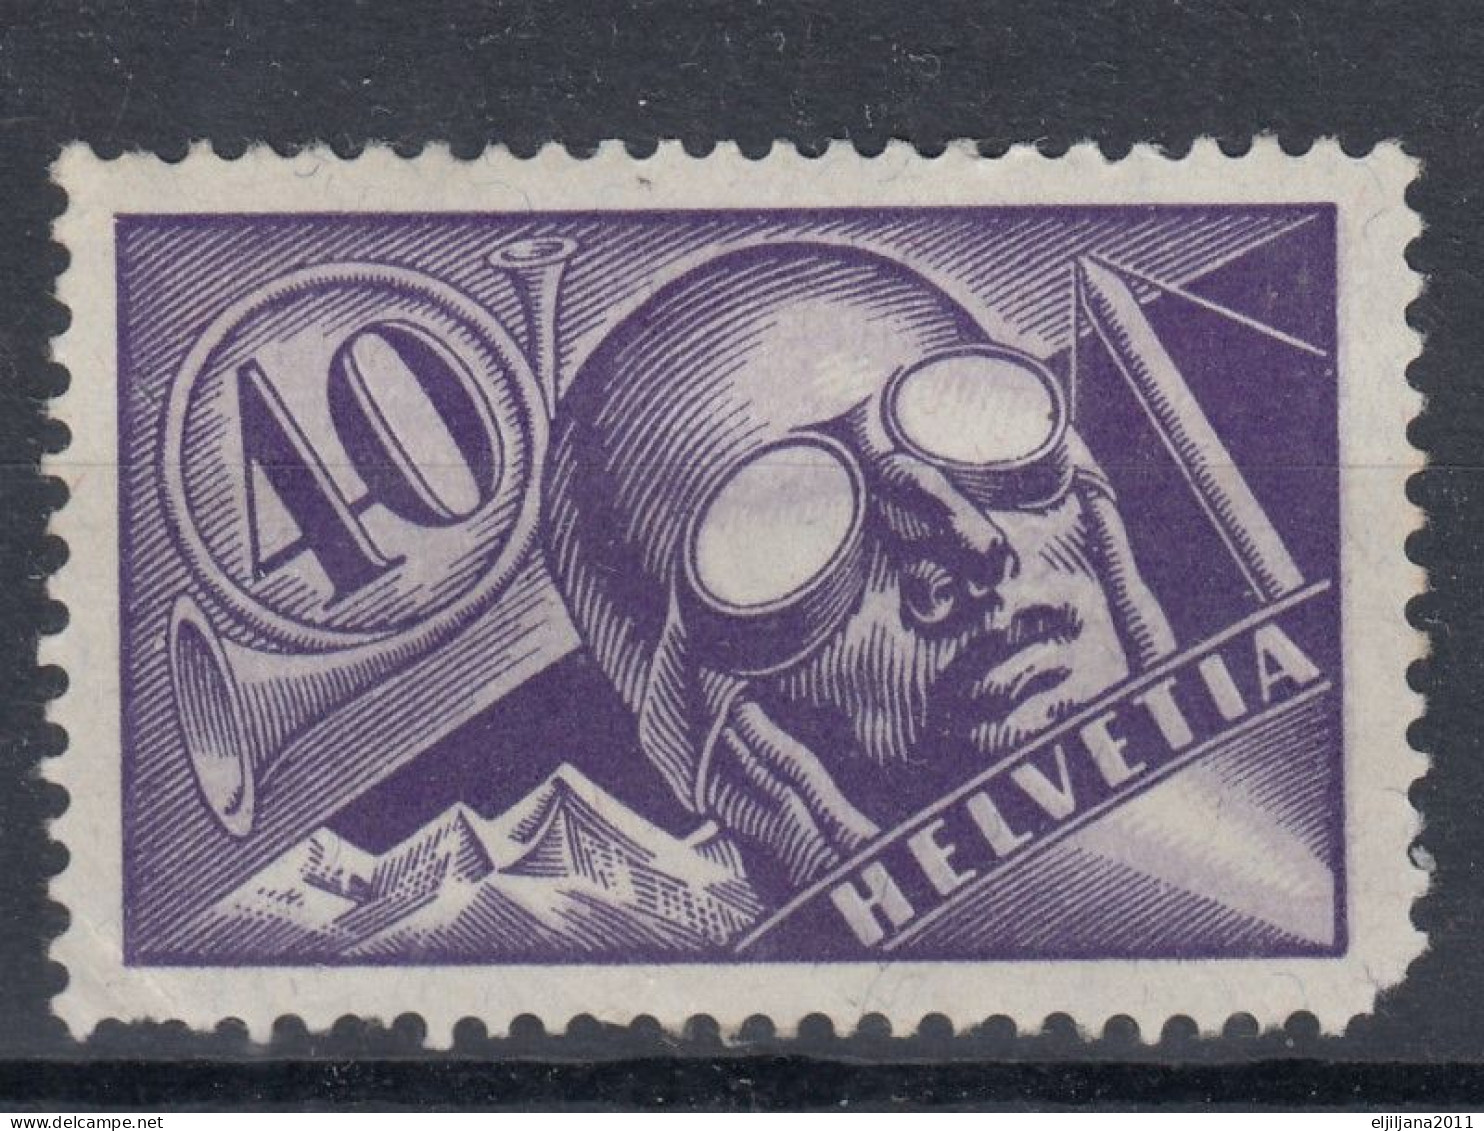 Switzerland / Helvetia / Schweiz / Suisse 1923 ⁕ Pilot - Airmail 40 C. Mi.182 ⁕ 1v MH (damaged) - Ungebraucht